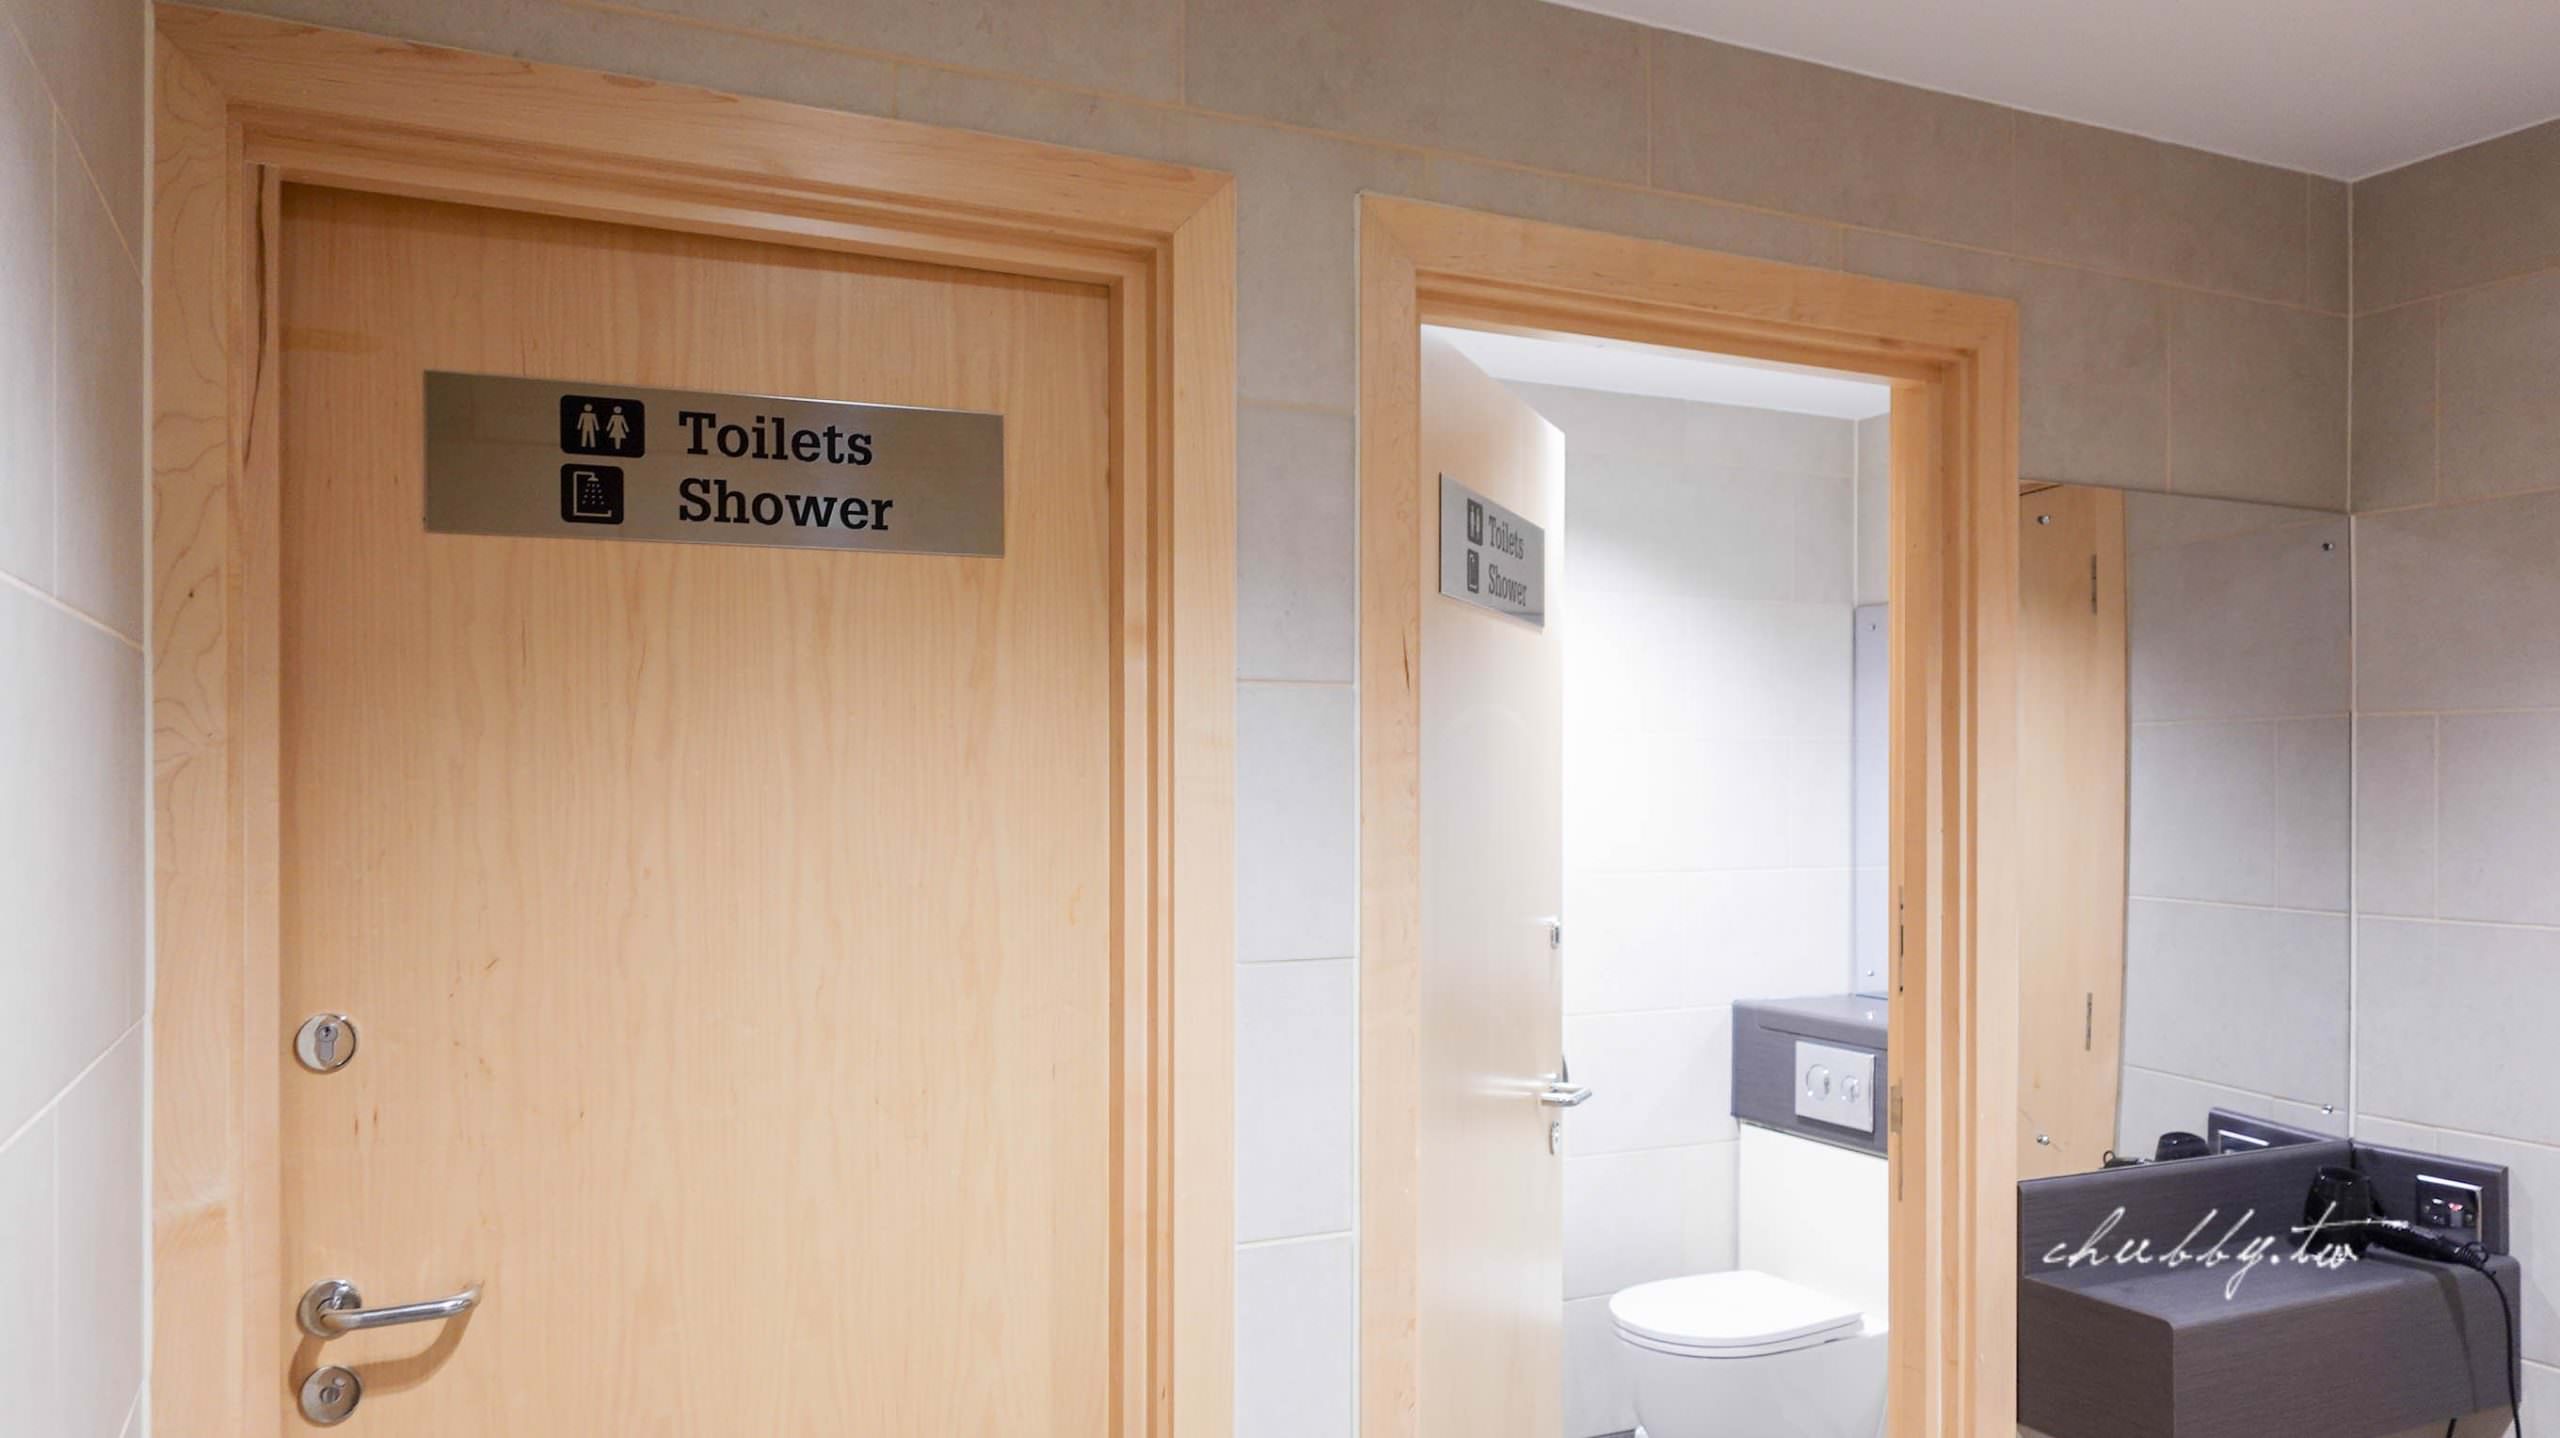 英國火車GWR頭等艙、GWR貴賓室搭乘經驗分享：低調奢華高質感頭等艙，科技廁所好害羞